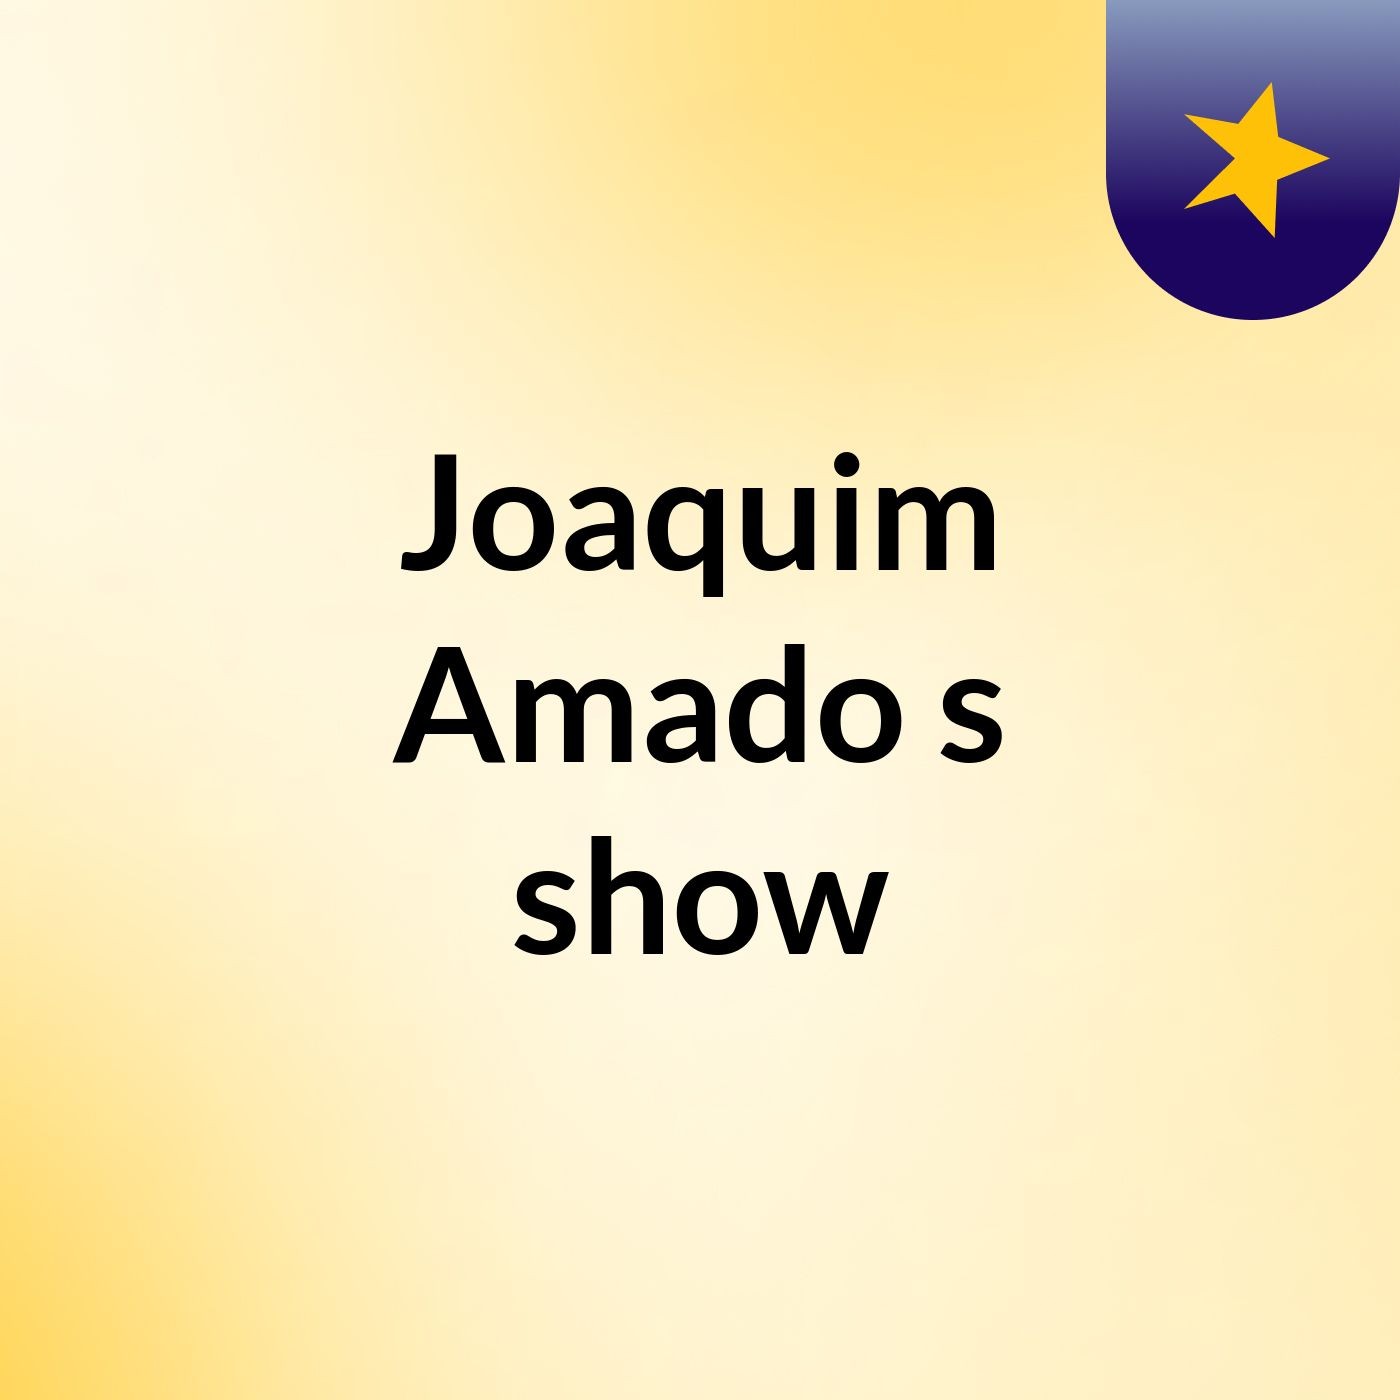 Joaquim Amado's show